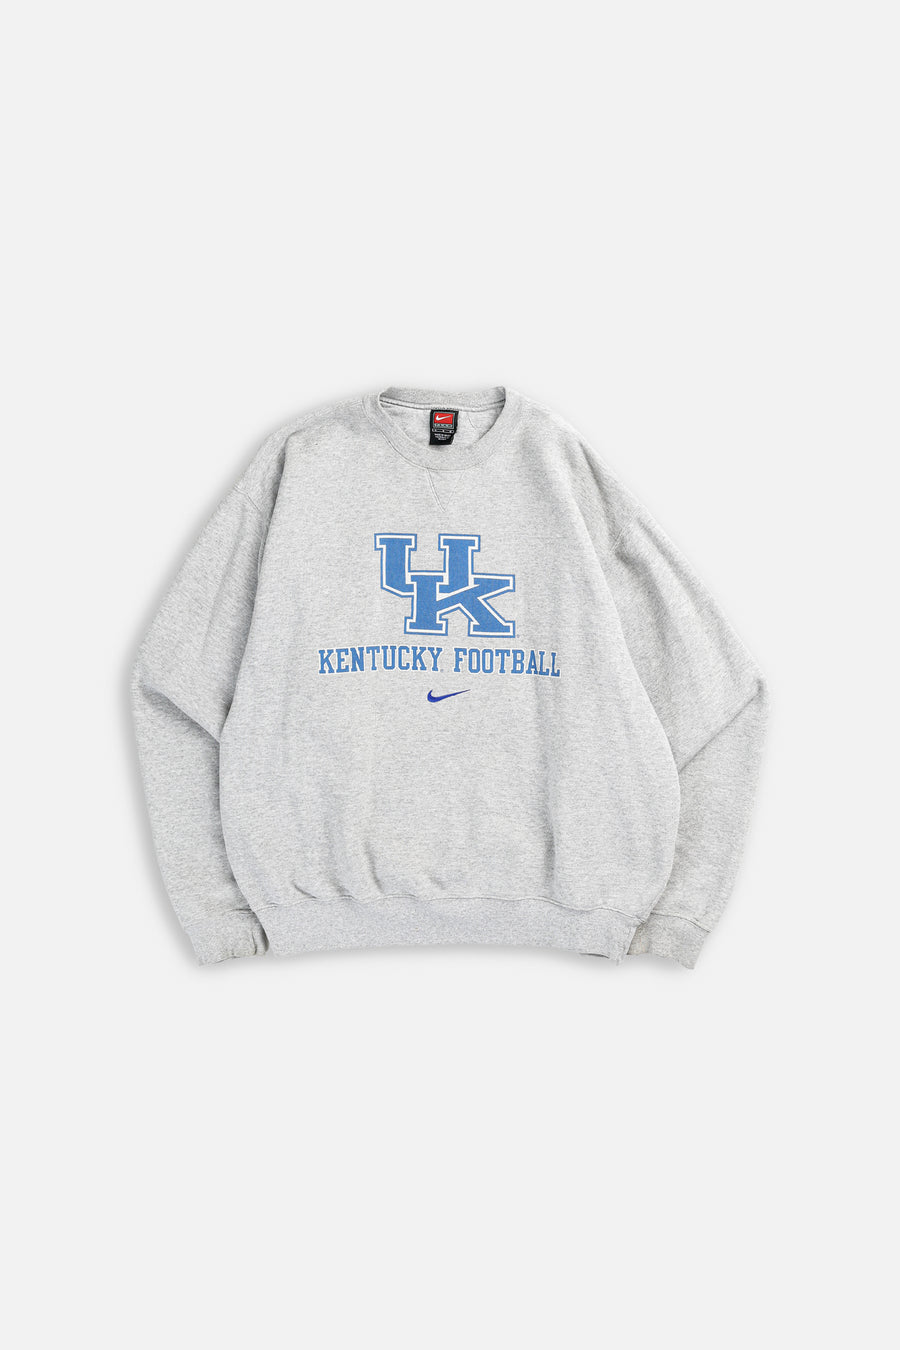 Vintage Kentucky Football Nike Team Sweatshirt - L